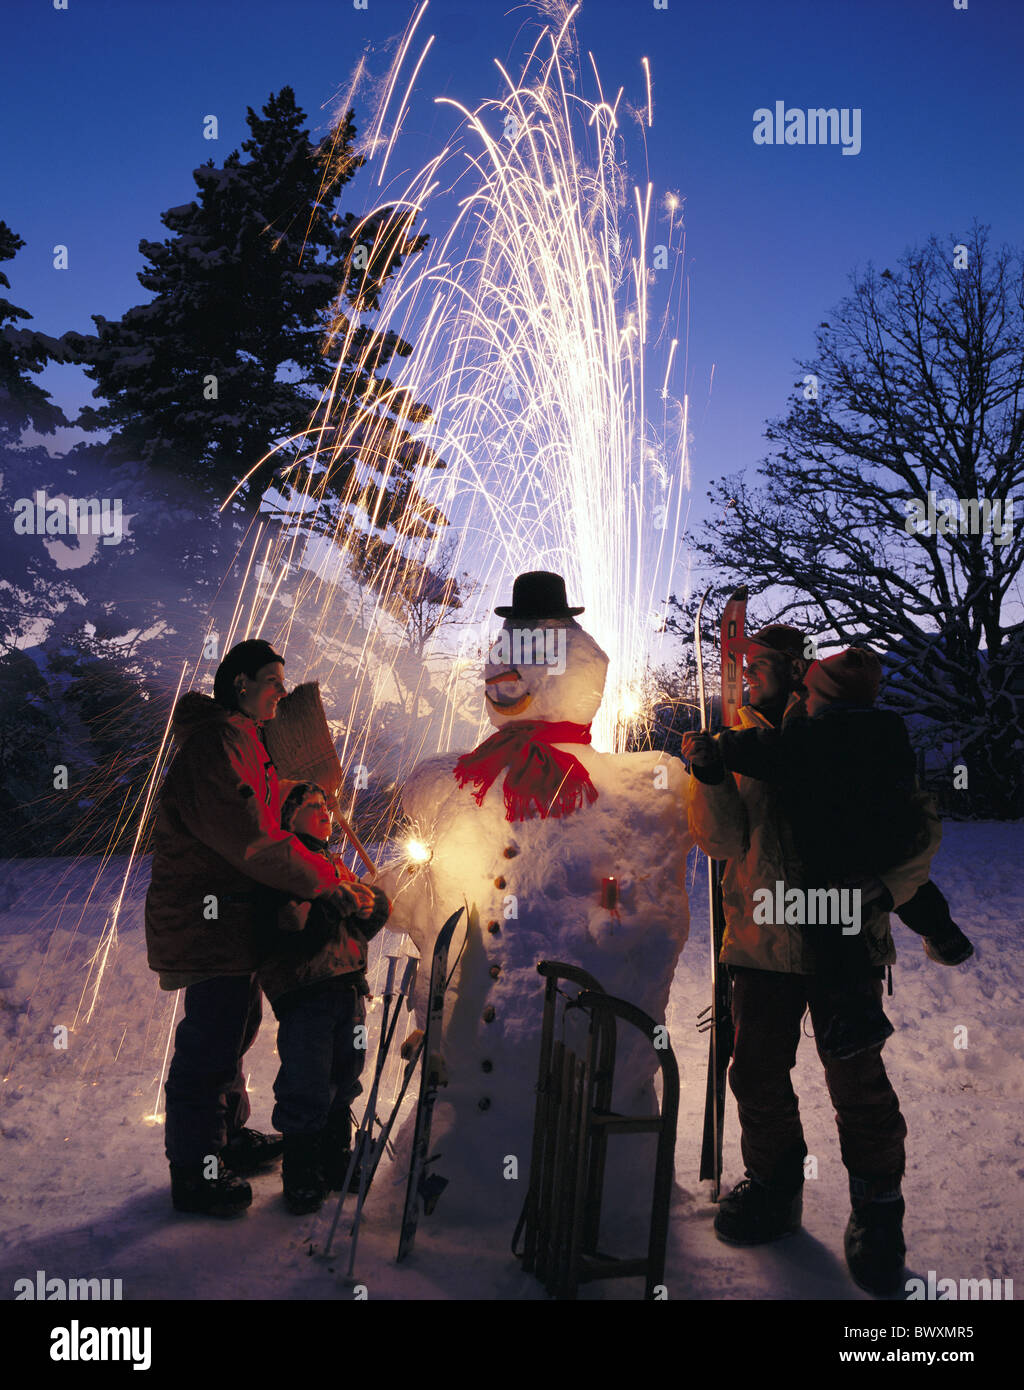 Weihnachten Urlaub Urlaub Silvester Eve Silvester Alpen Berge Schnee flare pyrotechnische Kerzen-Familie Stockfoto